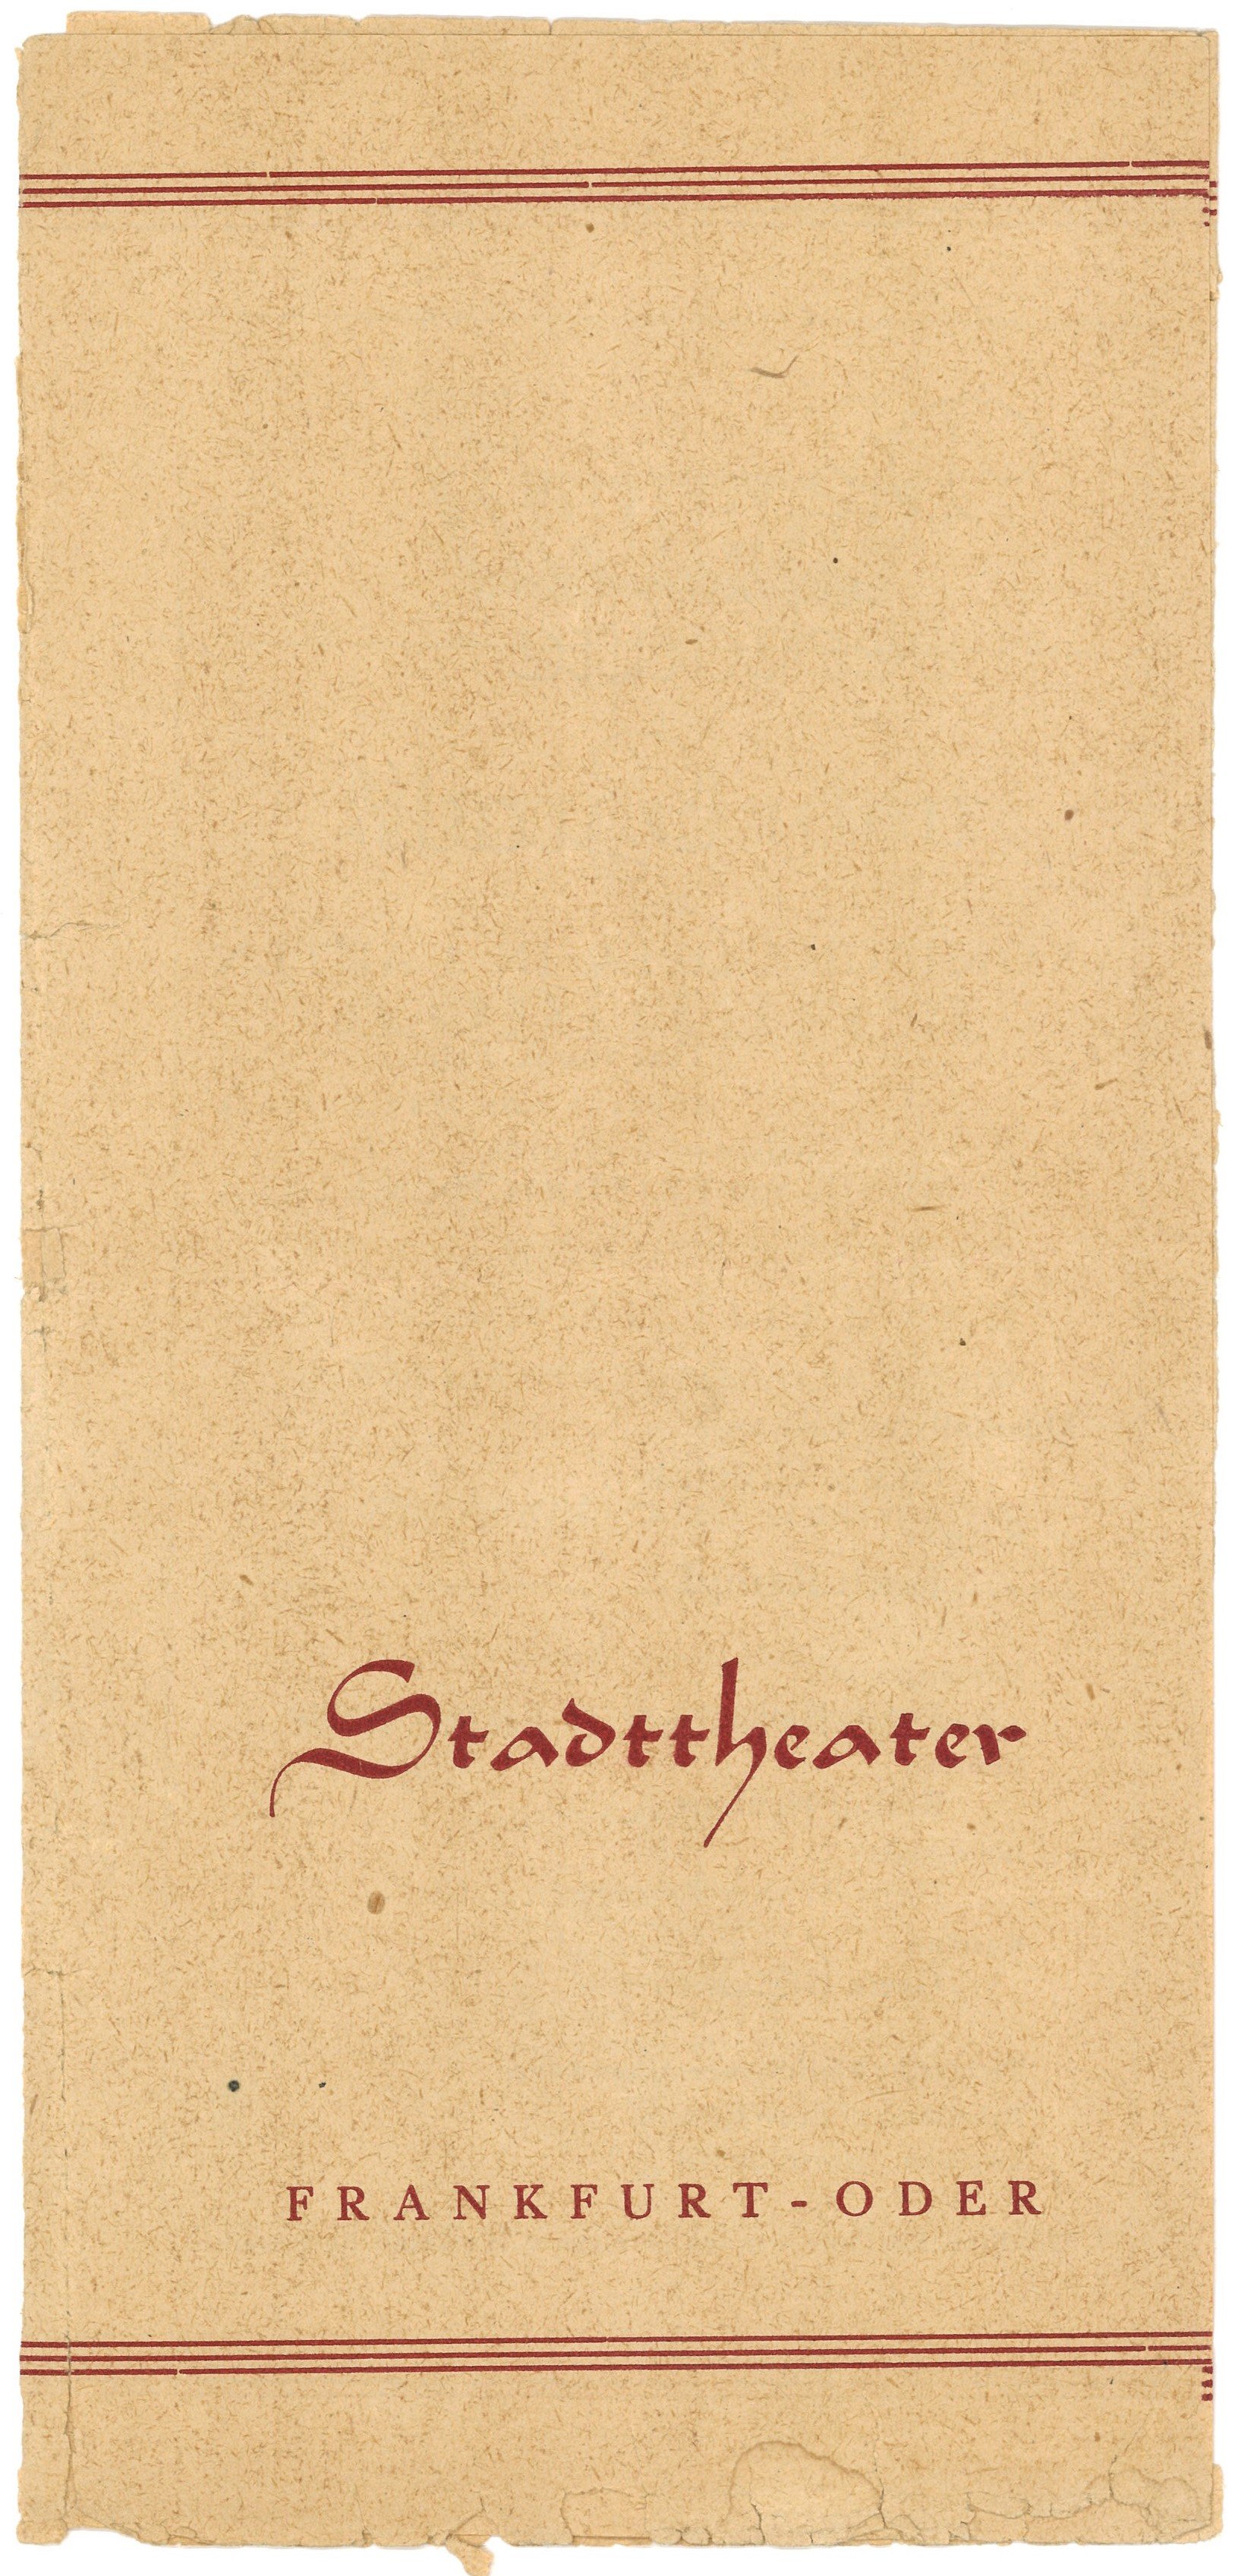 Programm des Stadttheaters Frankfurt (Oder) für "Die verkaufte Braut" um 1950 (Landesgeschichtliche Vereinigung für die Mark Brandenburg e.V., Archiv CC BY)